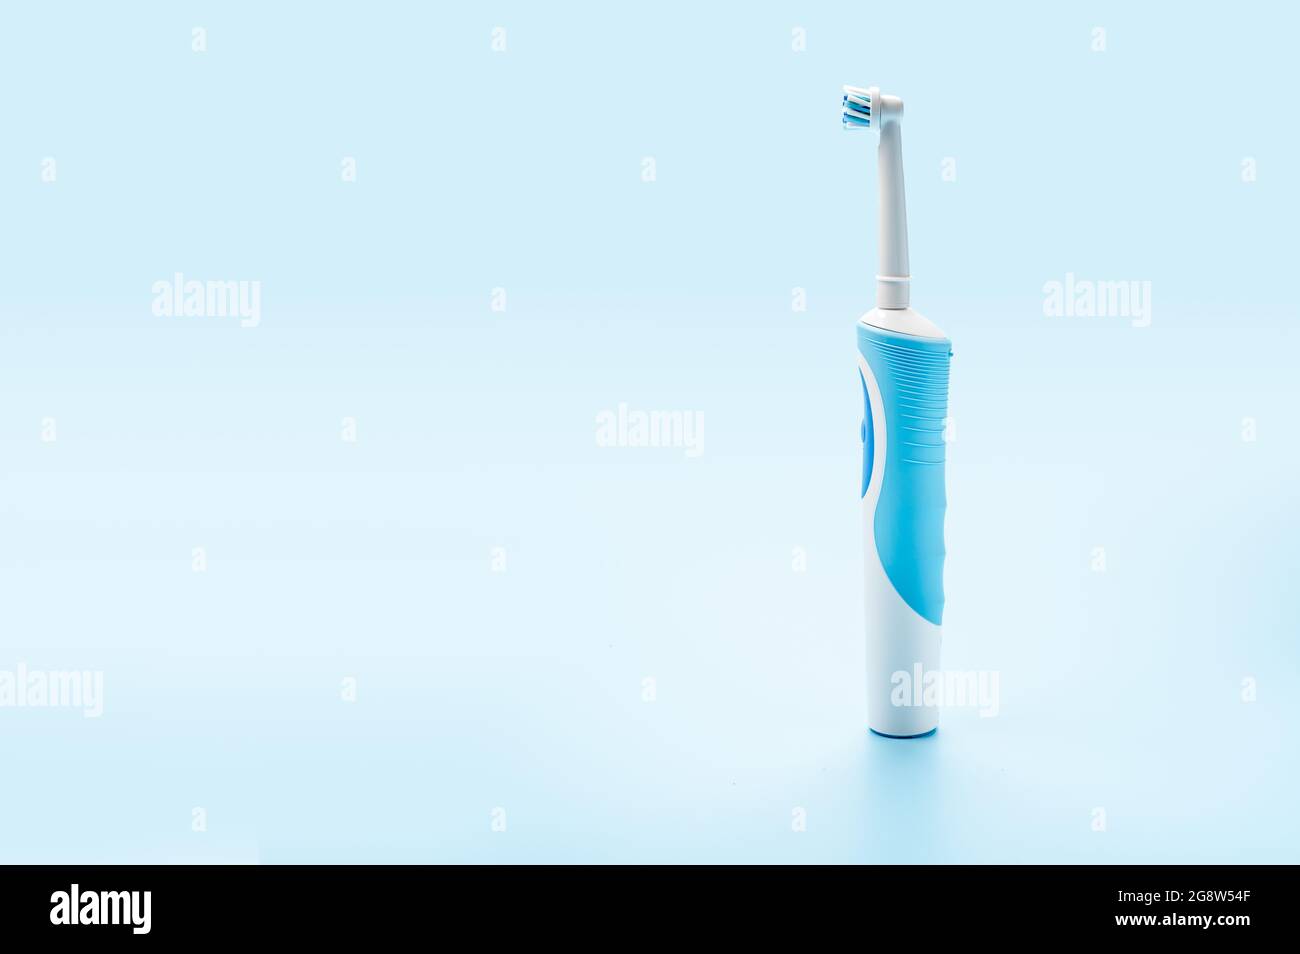 moderno spazzolino elettrico su sfondo blu. Strumenti di cura dentale. Concetto di buona igiene della bocca. Concetto di cura orale professionale e denti sani b Foto Stock